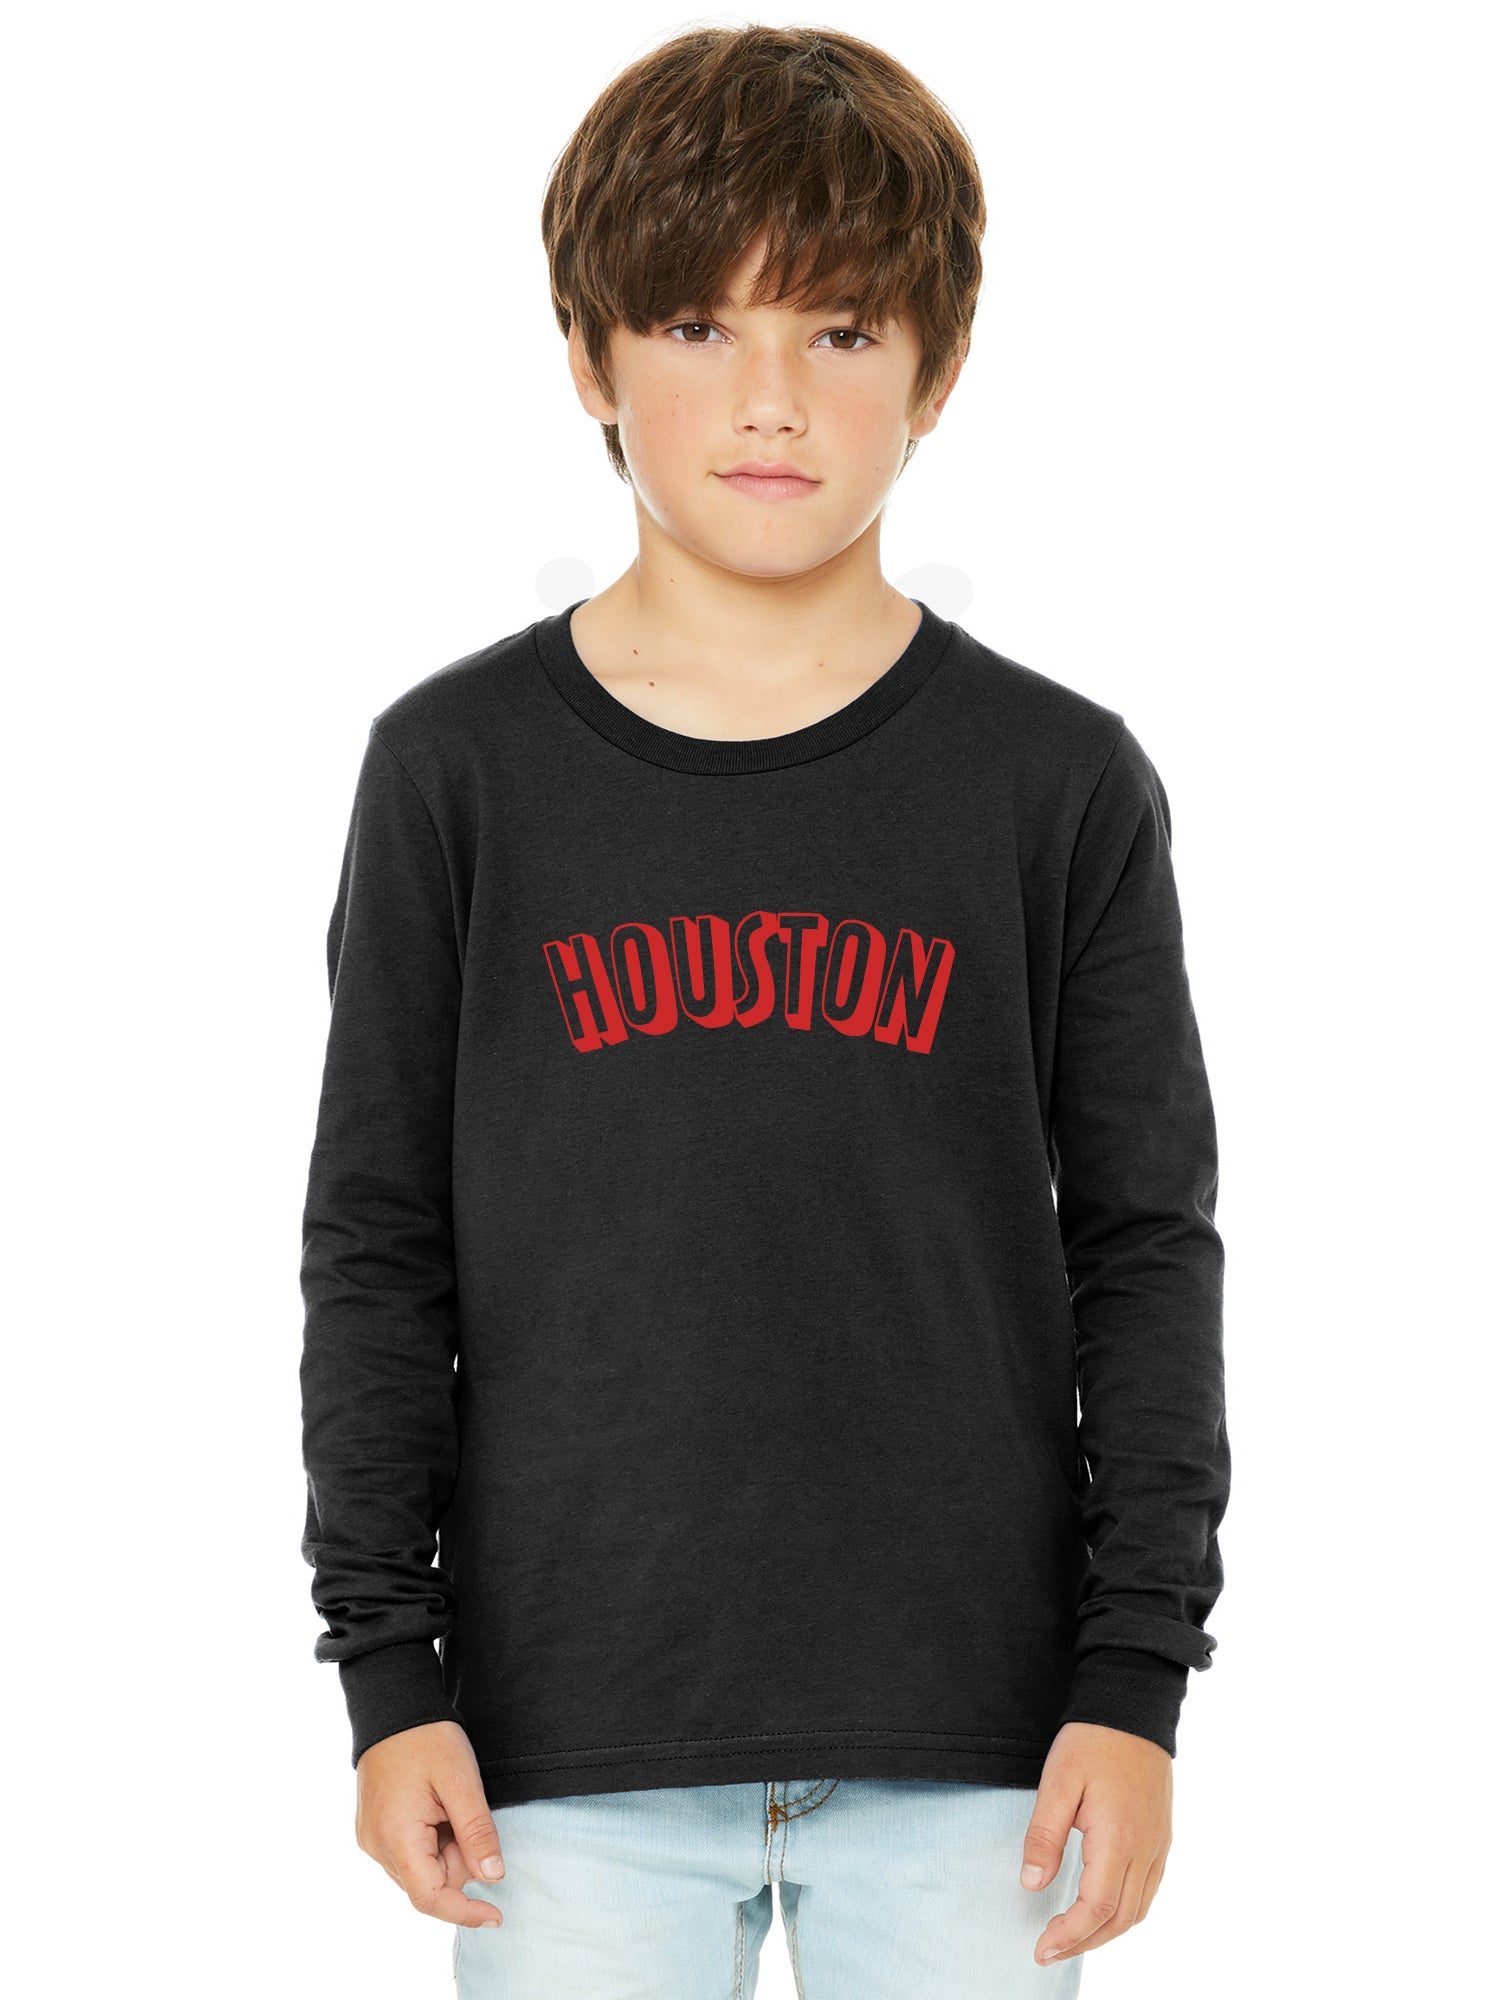 Houston Clothing